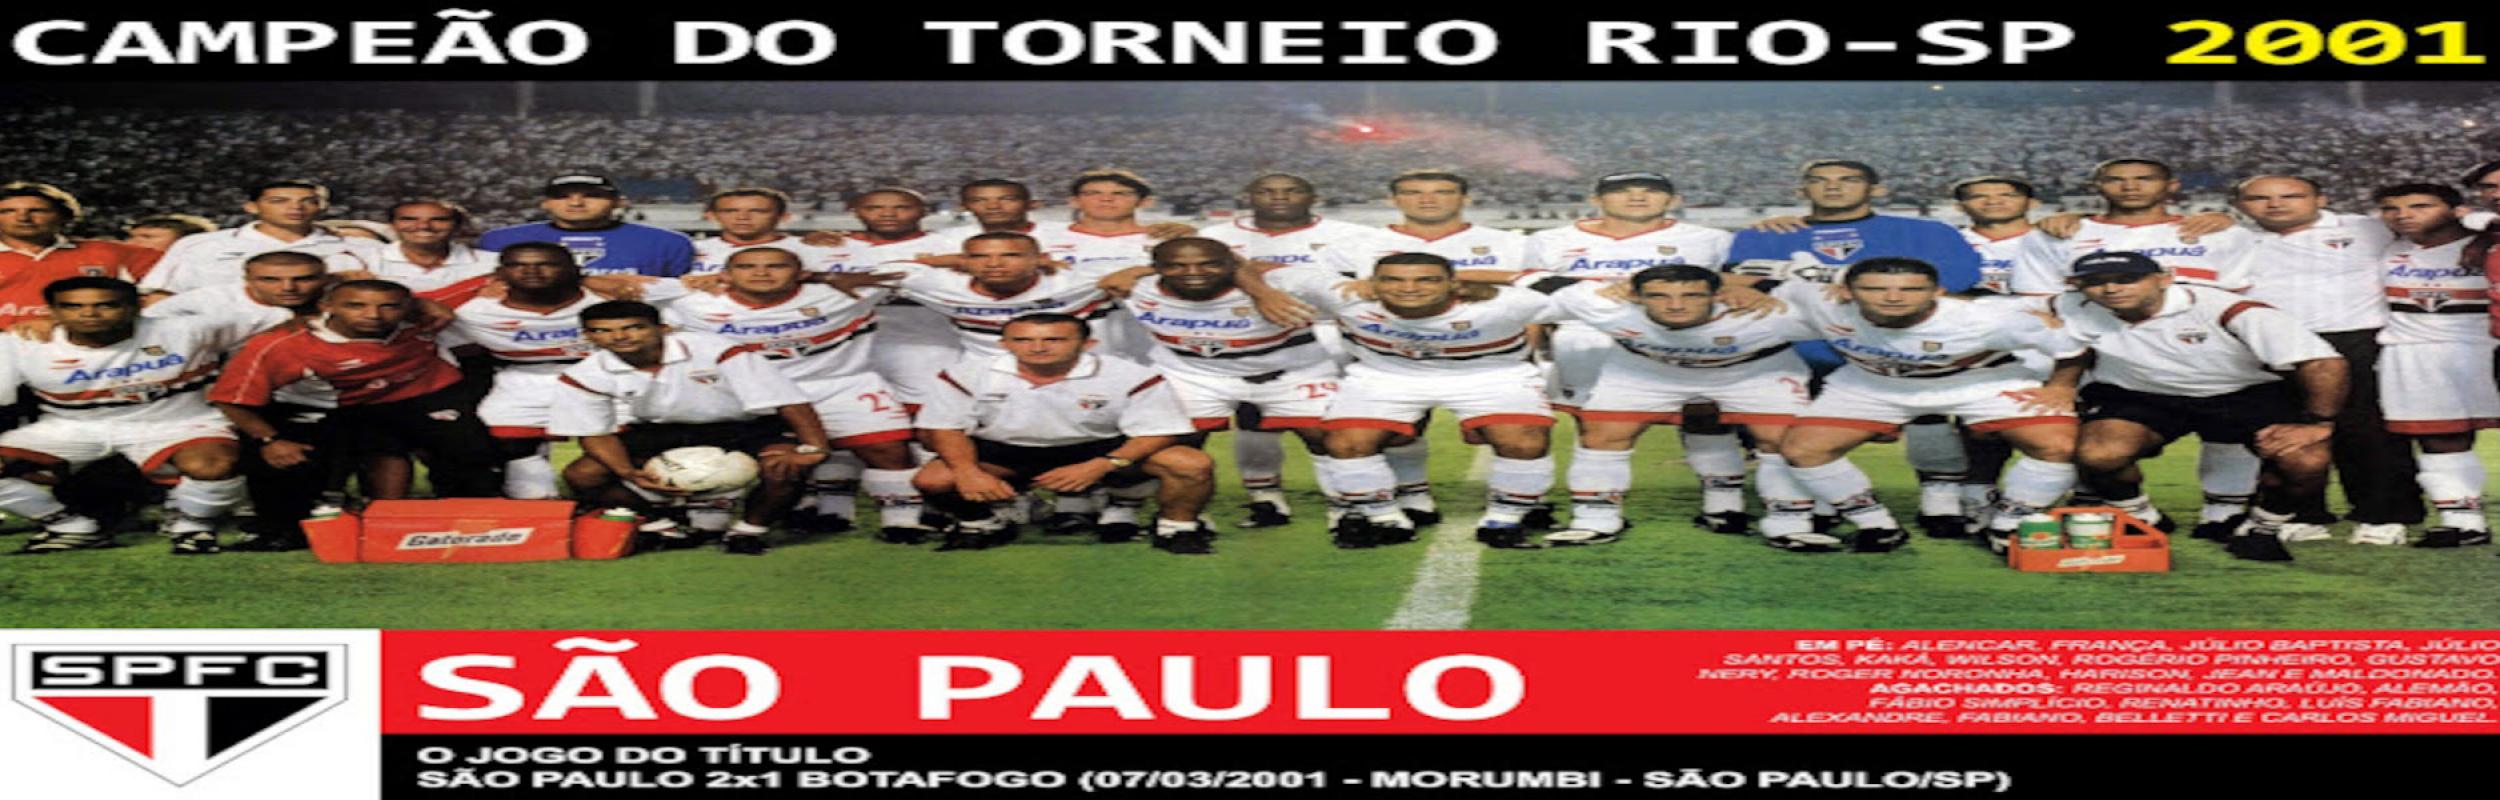 Torneio Rio-São Paulo 2001